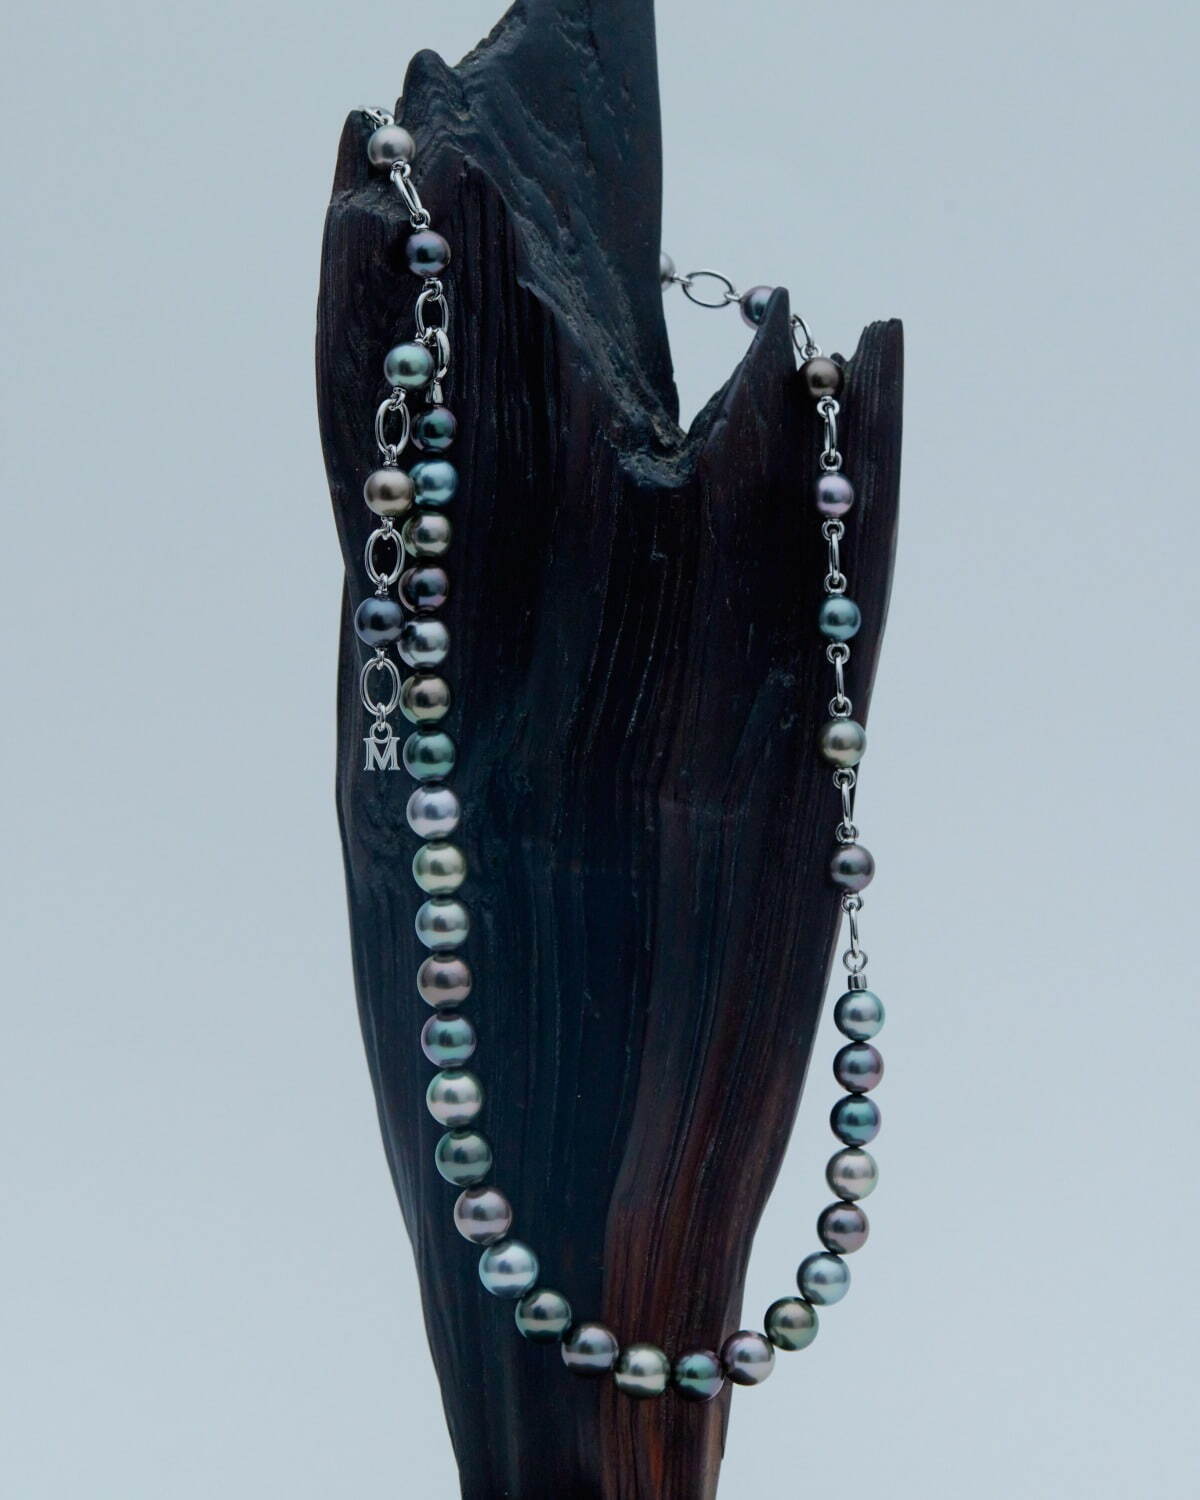 ネックレス 黒蝶真珠(マルチカラー) / 銀製 / 長さ約62cm 1,430,000円